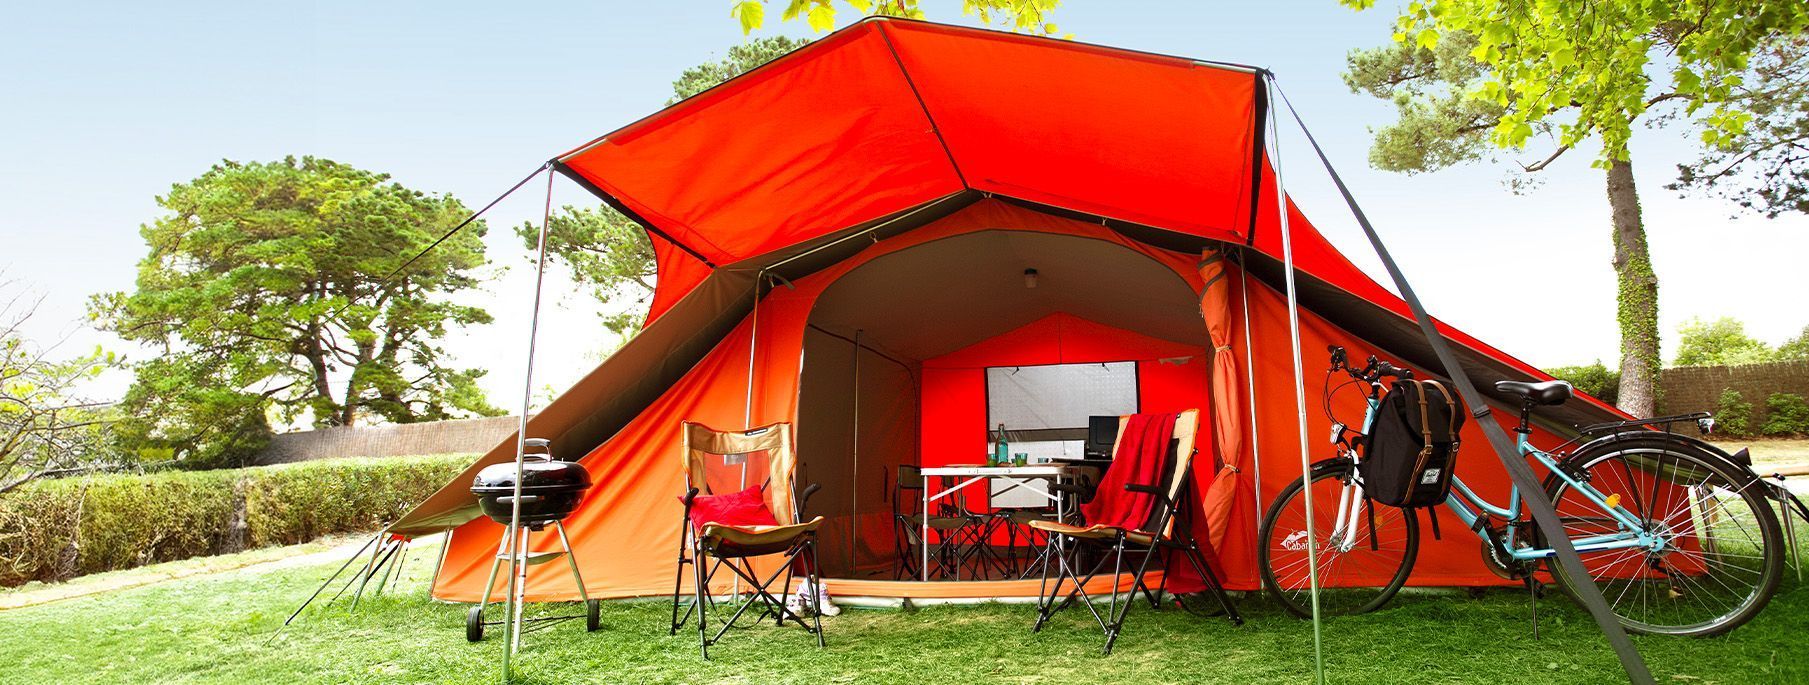 Comment aménager sa tente de camping pour vos prochaines vacances ?